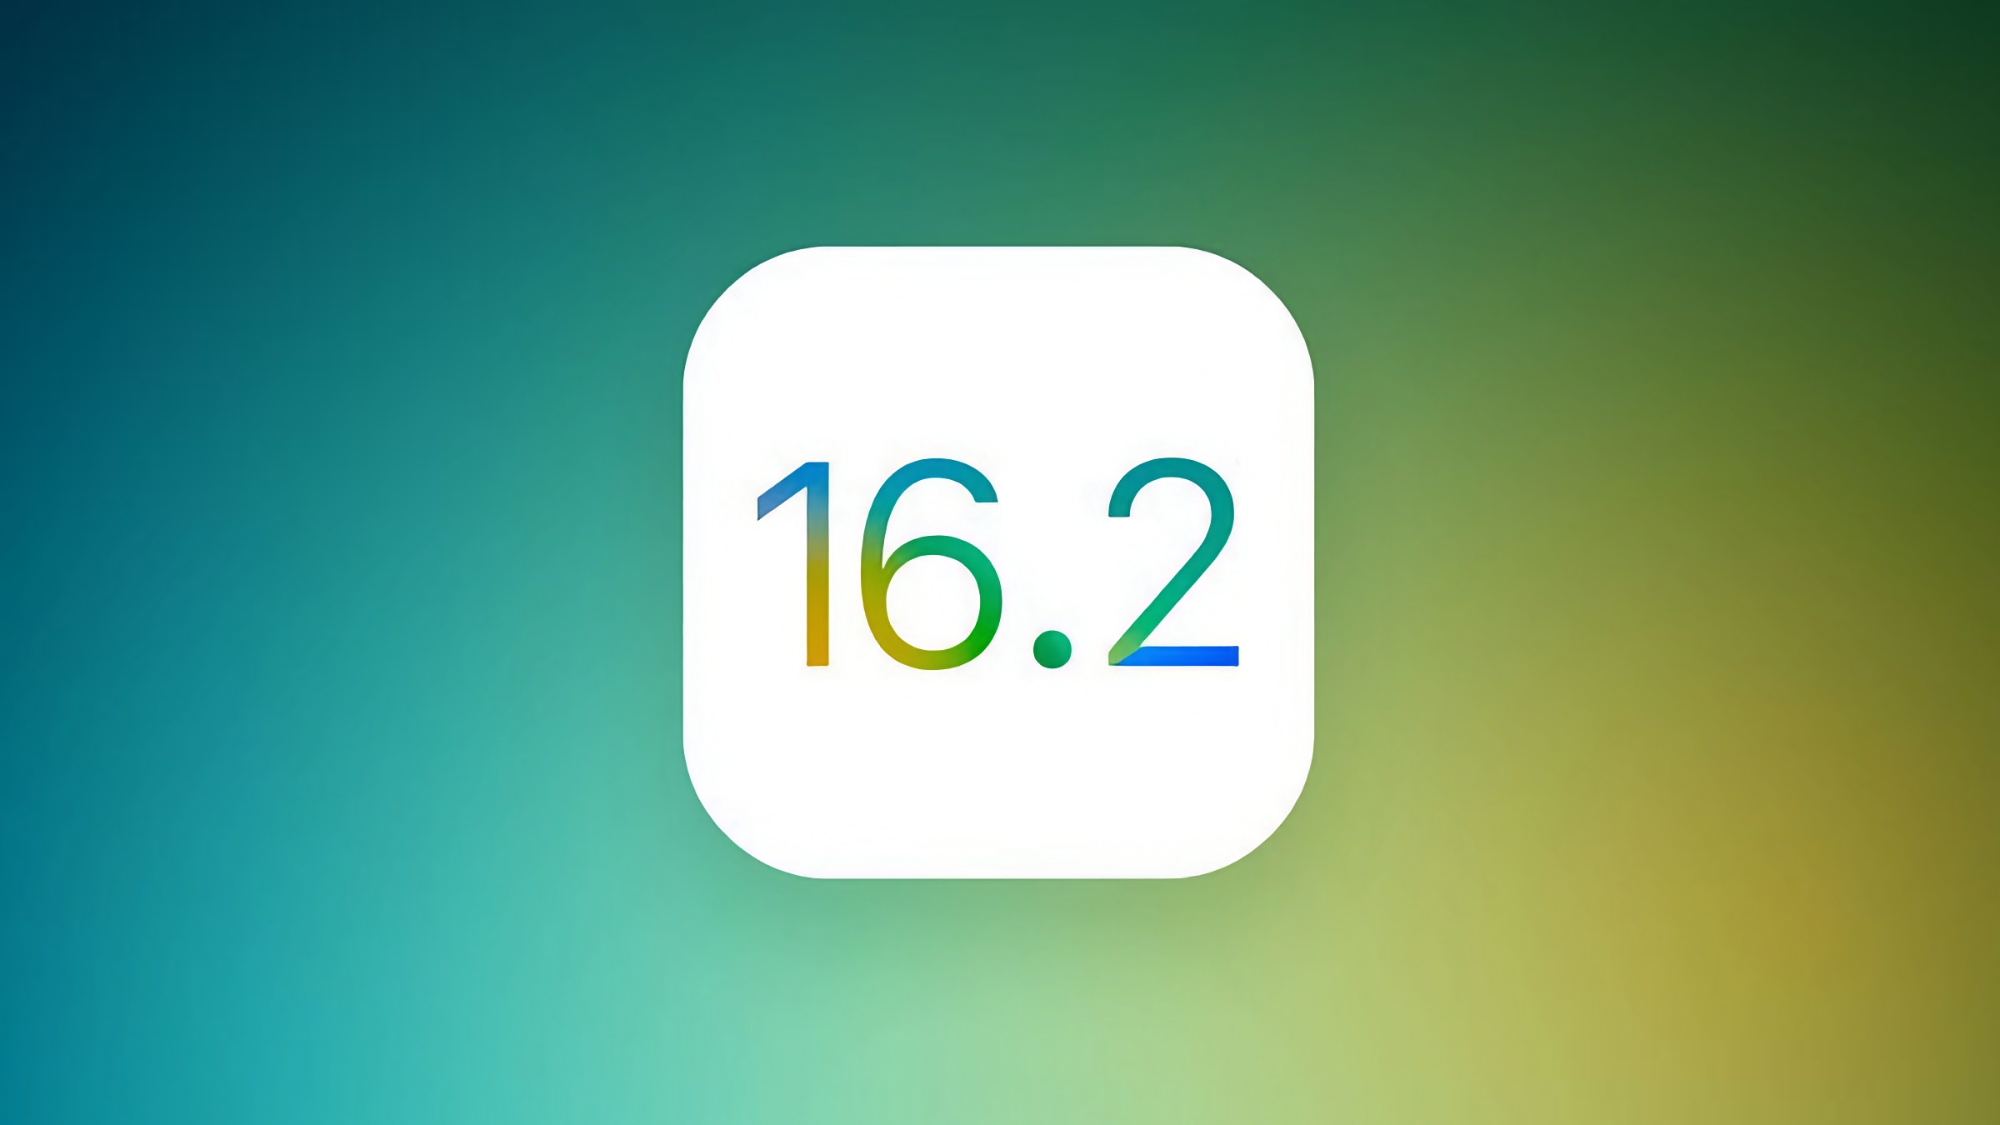 Apple lanzó la versión candidata de iOS 16.2 con muchos cambios pequeños pero útiles